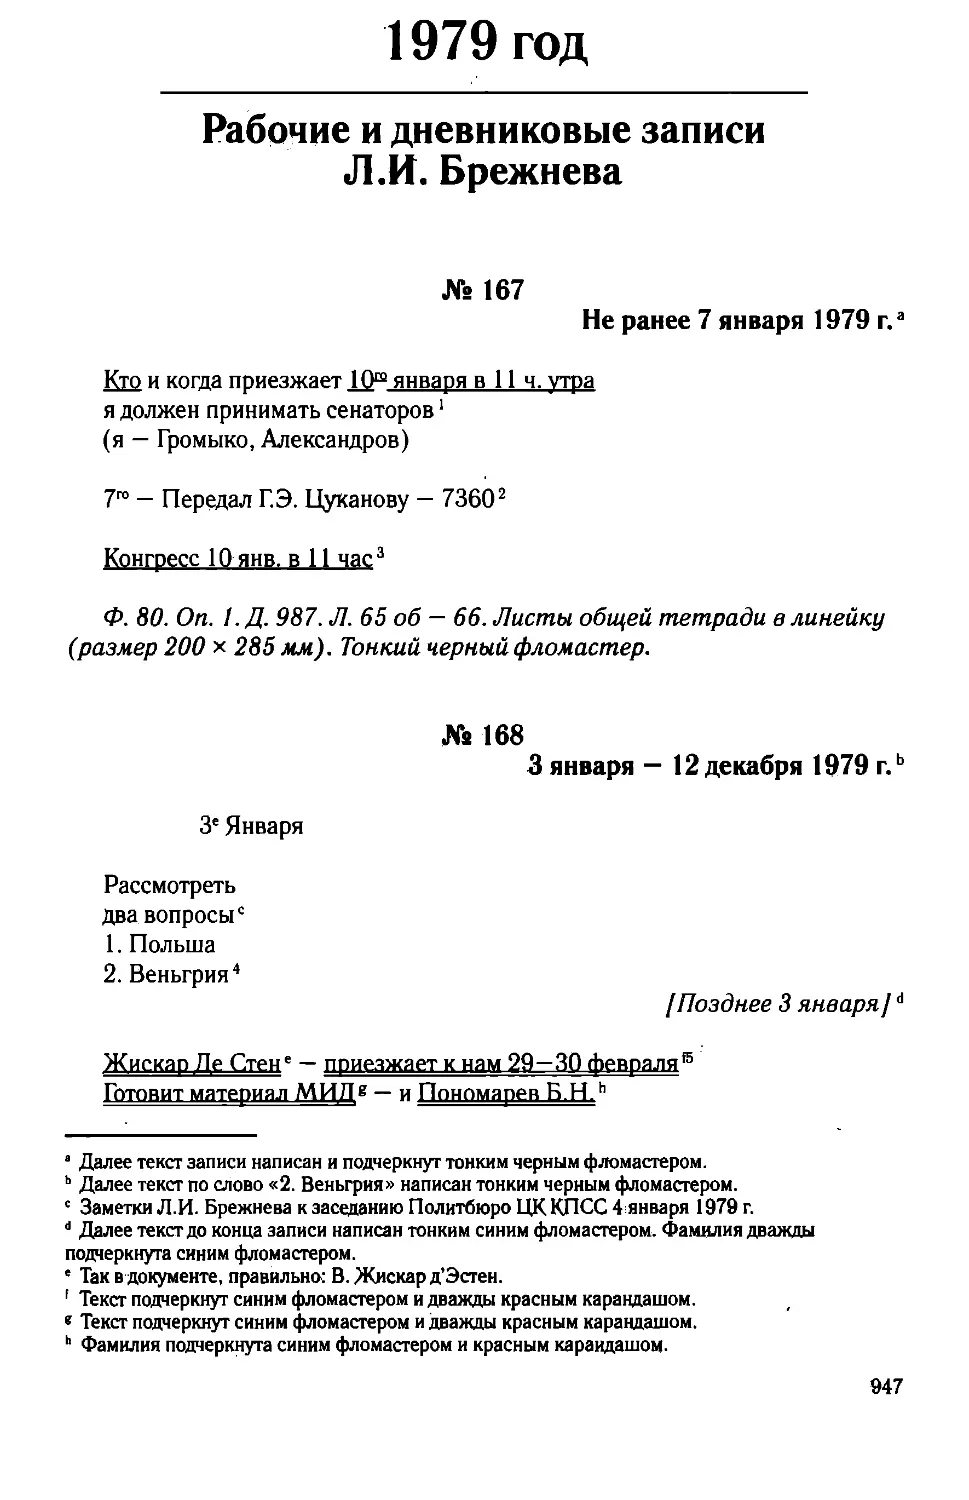 Рабочие и дневниковые записи Л.И. Брежнева. 1979 год